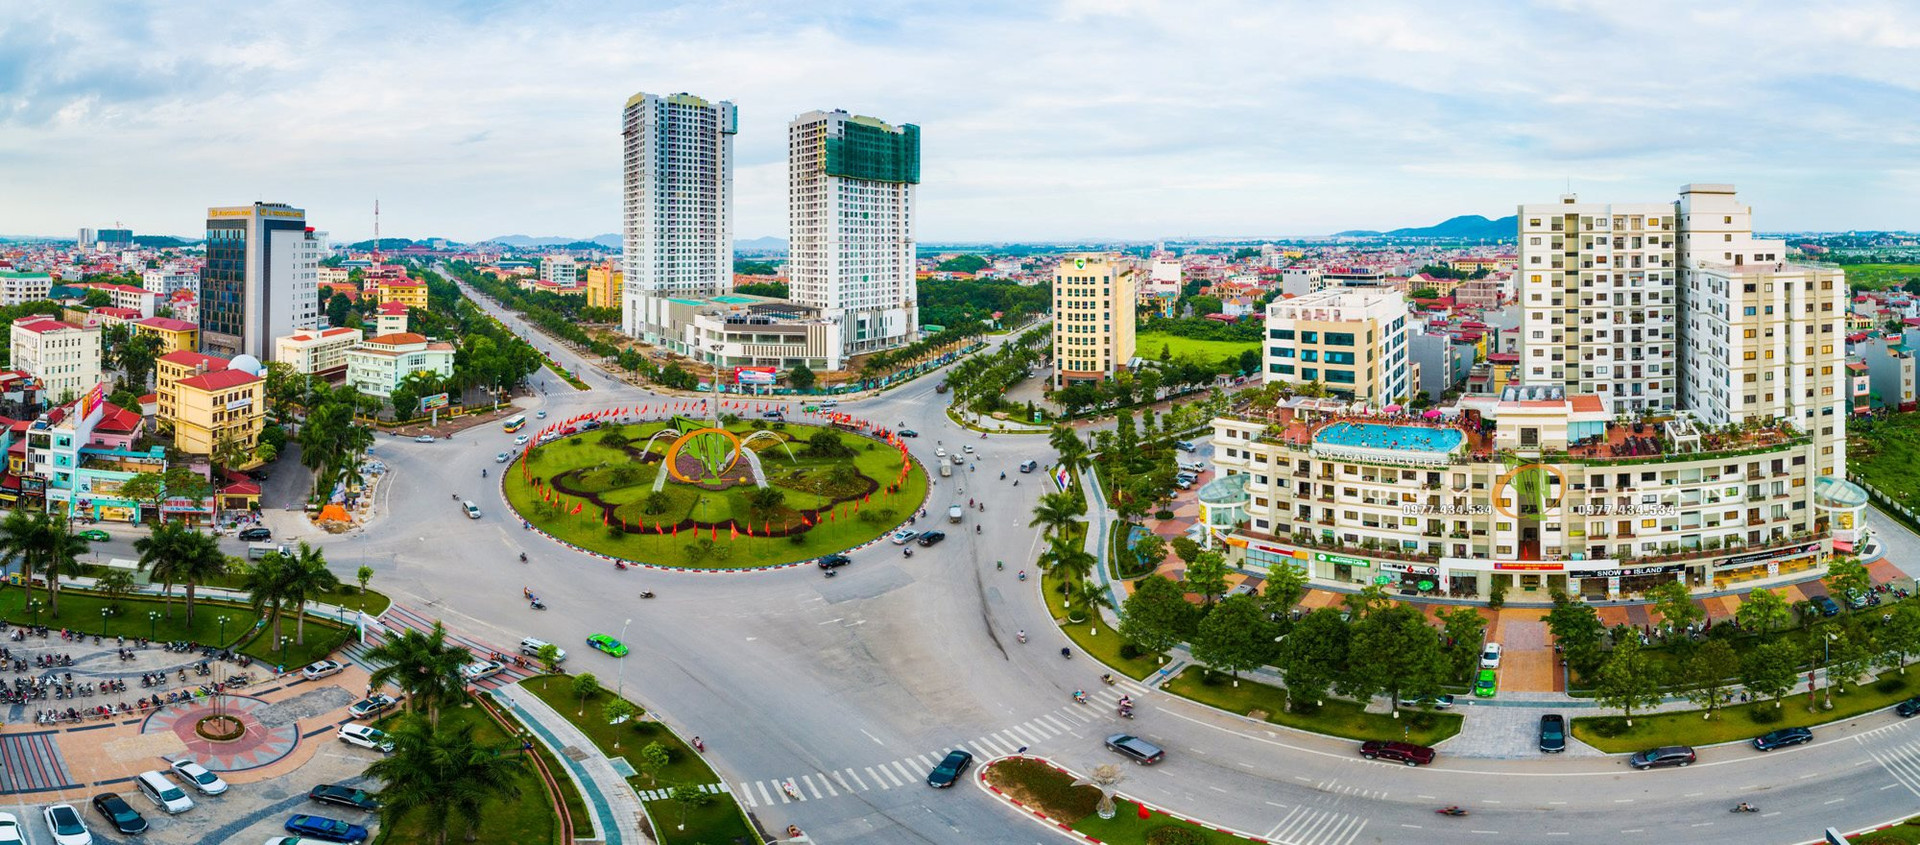 Tình hình kinh tế của tỉnh nhỏ nhất Việt Nam sắp lên thành phố trực thuộc trung ương: Hút tới 1,4 tỷ USD vốn FDI, đang là “quán quân” về xuất khẩu - Ảnh 1.